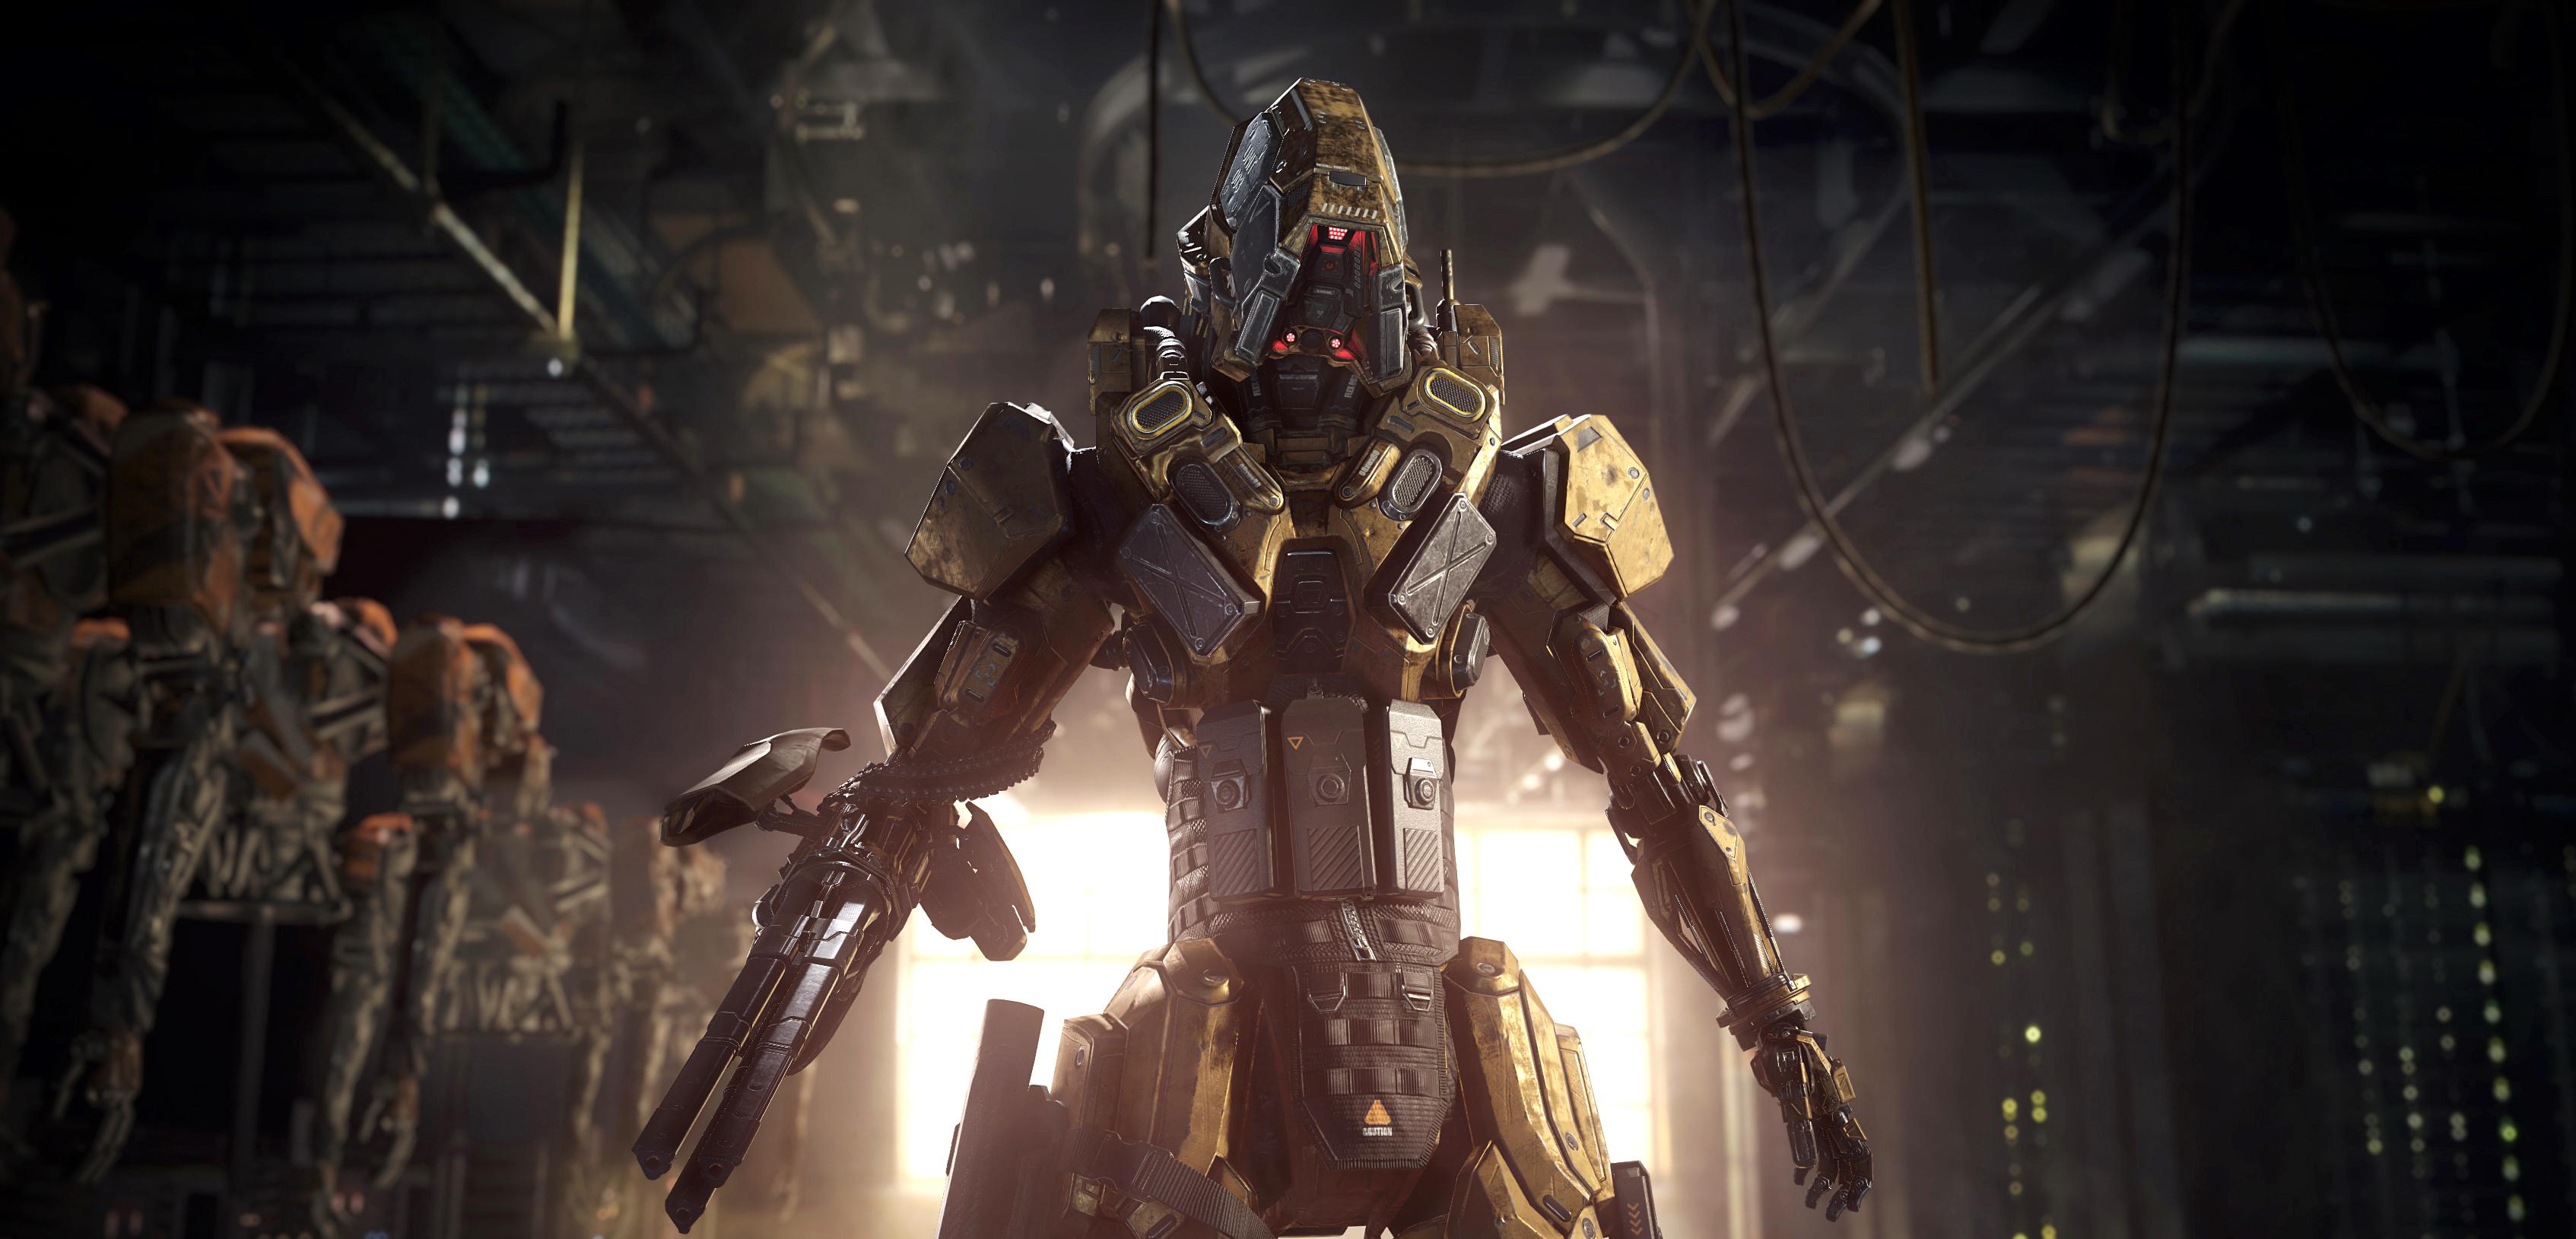 Elektryczny dotyk i wymioty na odległość - motywy rodem z BioShock w Call of Duty: Black Ops III